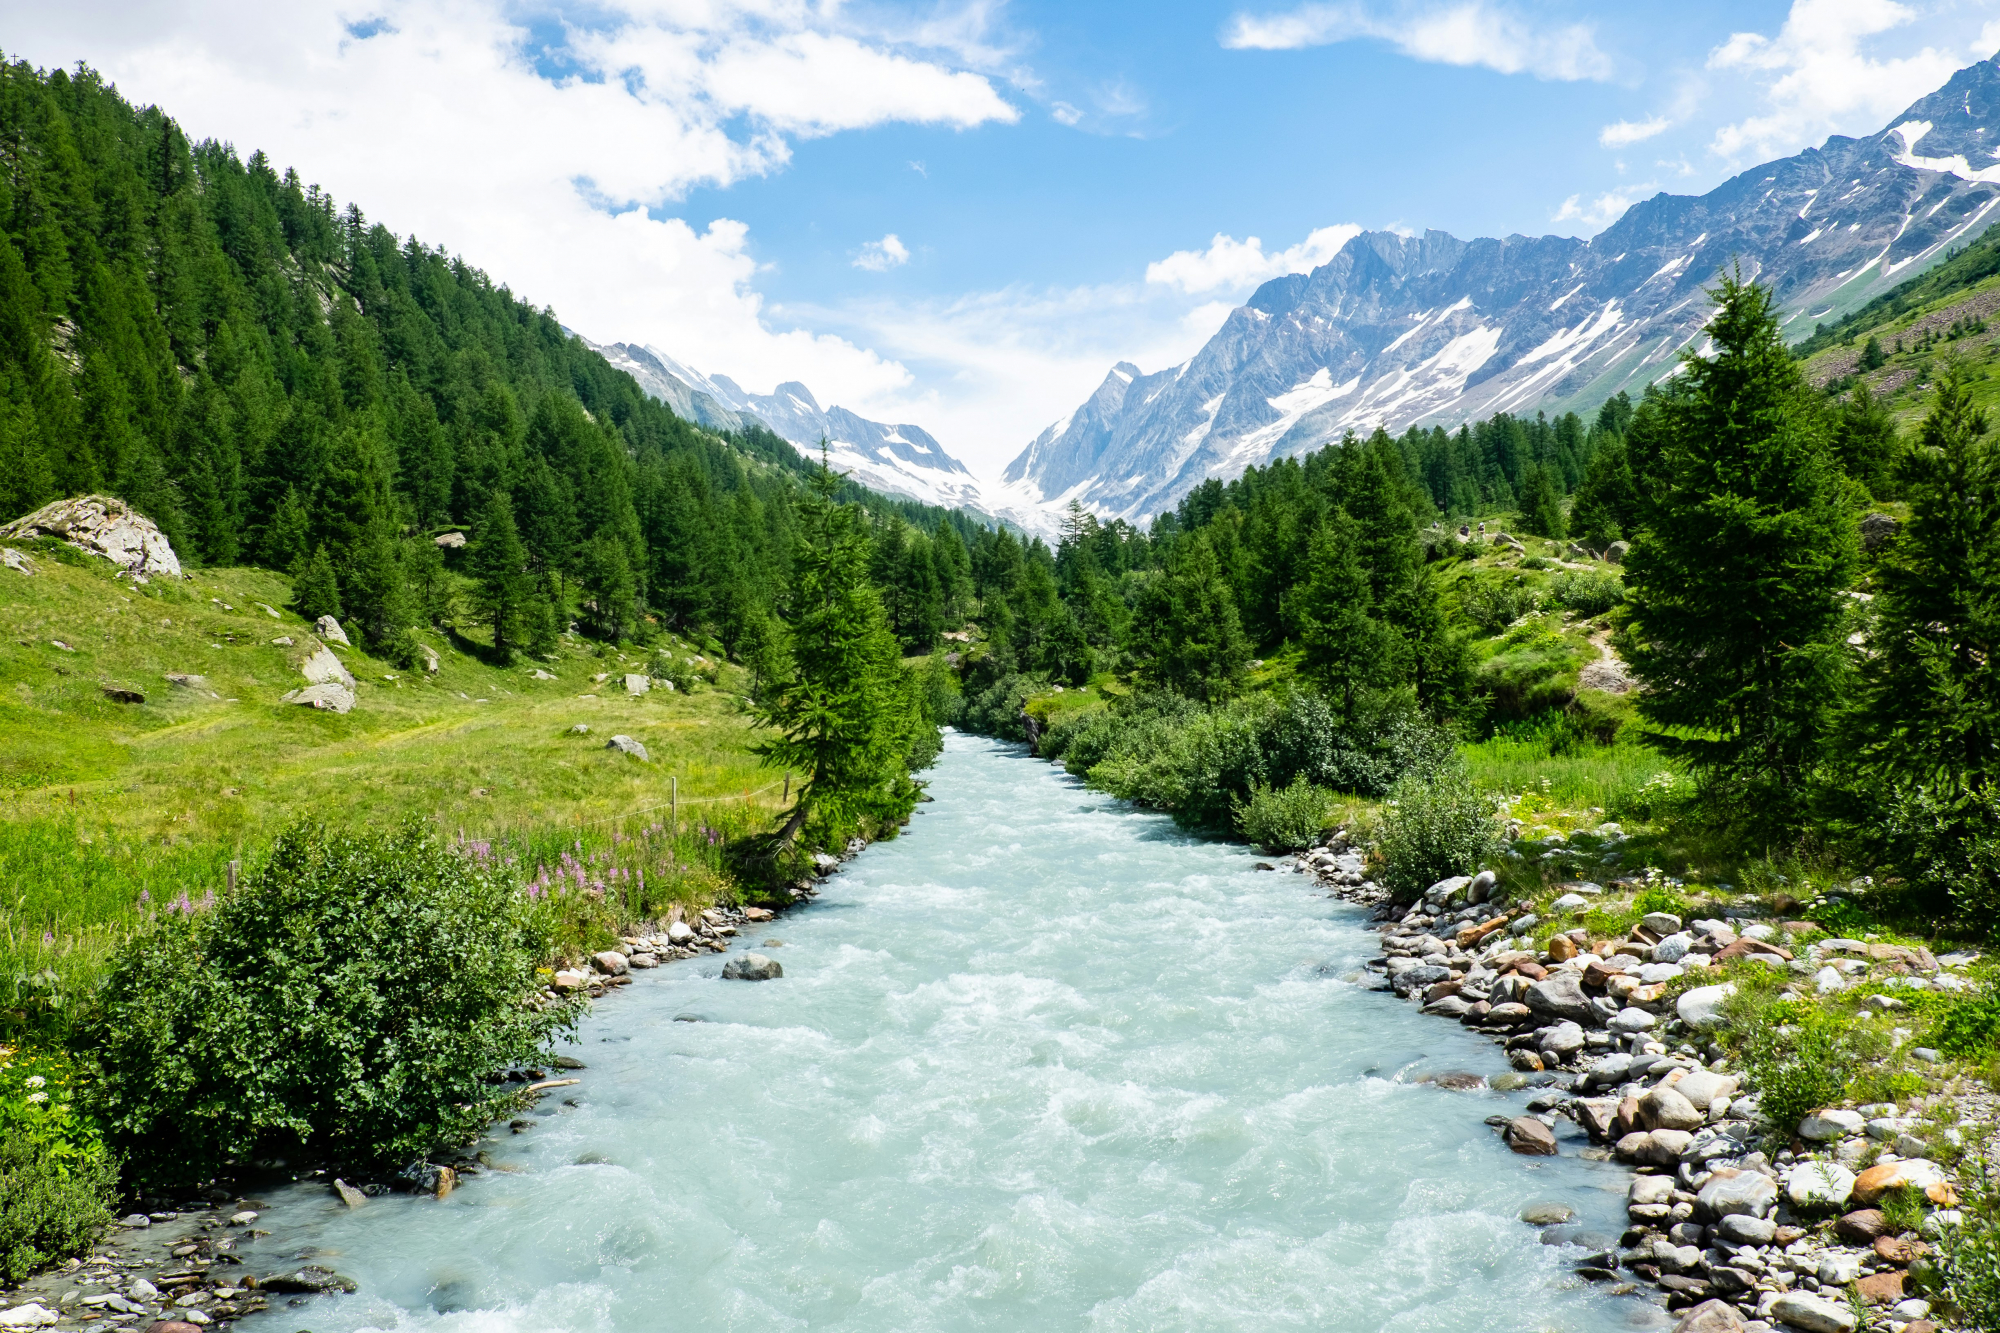 découvrez la beauté naturelle et la richesse culturelle de la suisse, un pays renommé pour ses paysages époustouflants, ses montagnes majestueuses, ses lacs cristallins et ses villes pittoresques.